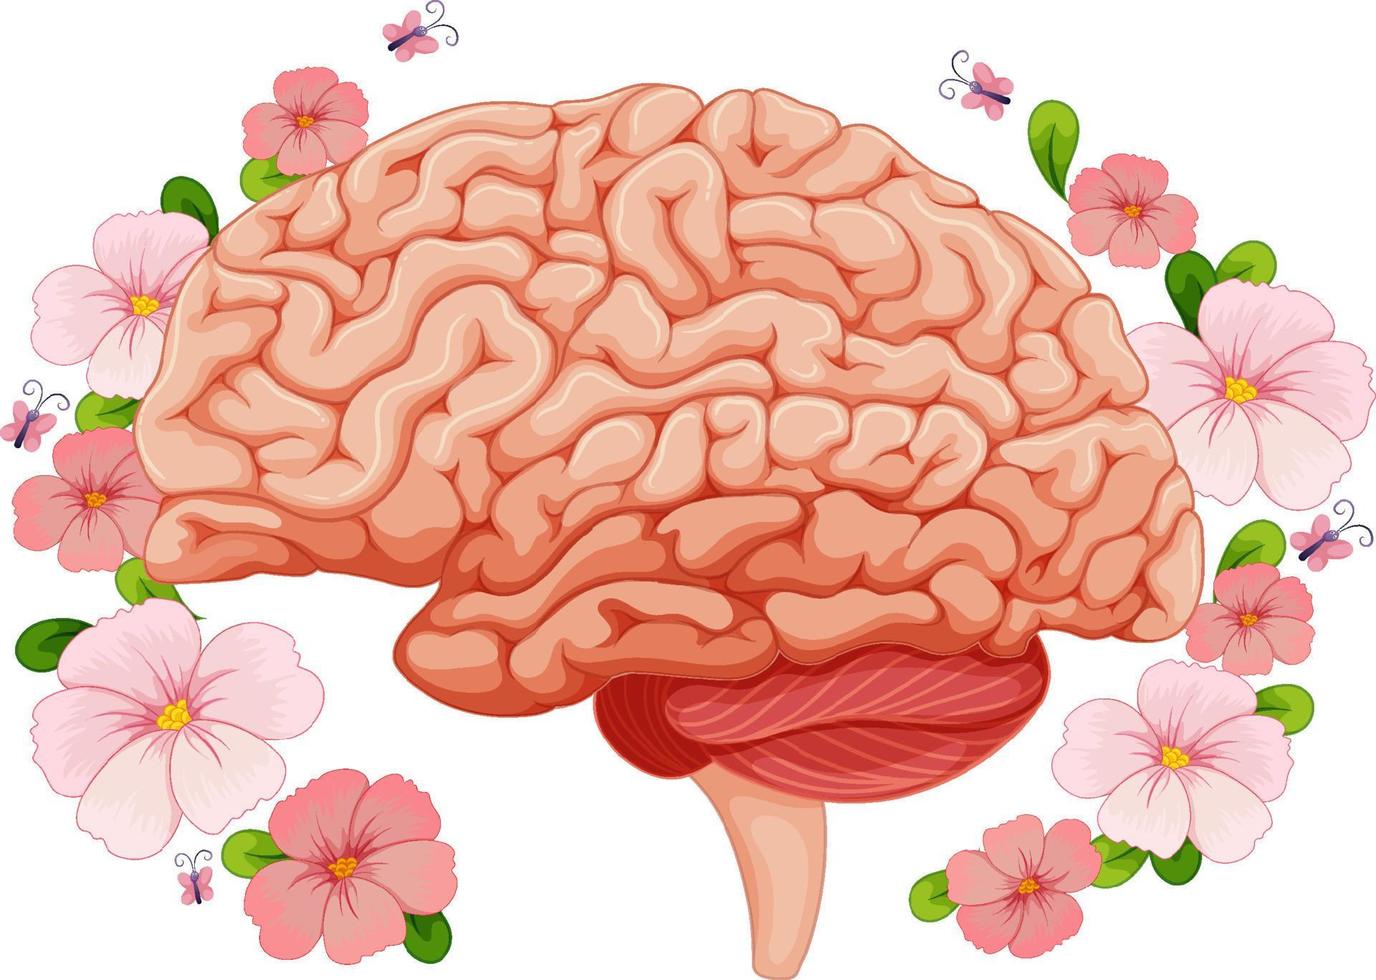 cerebro humano con flores rosas alrededor vector